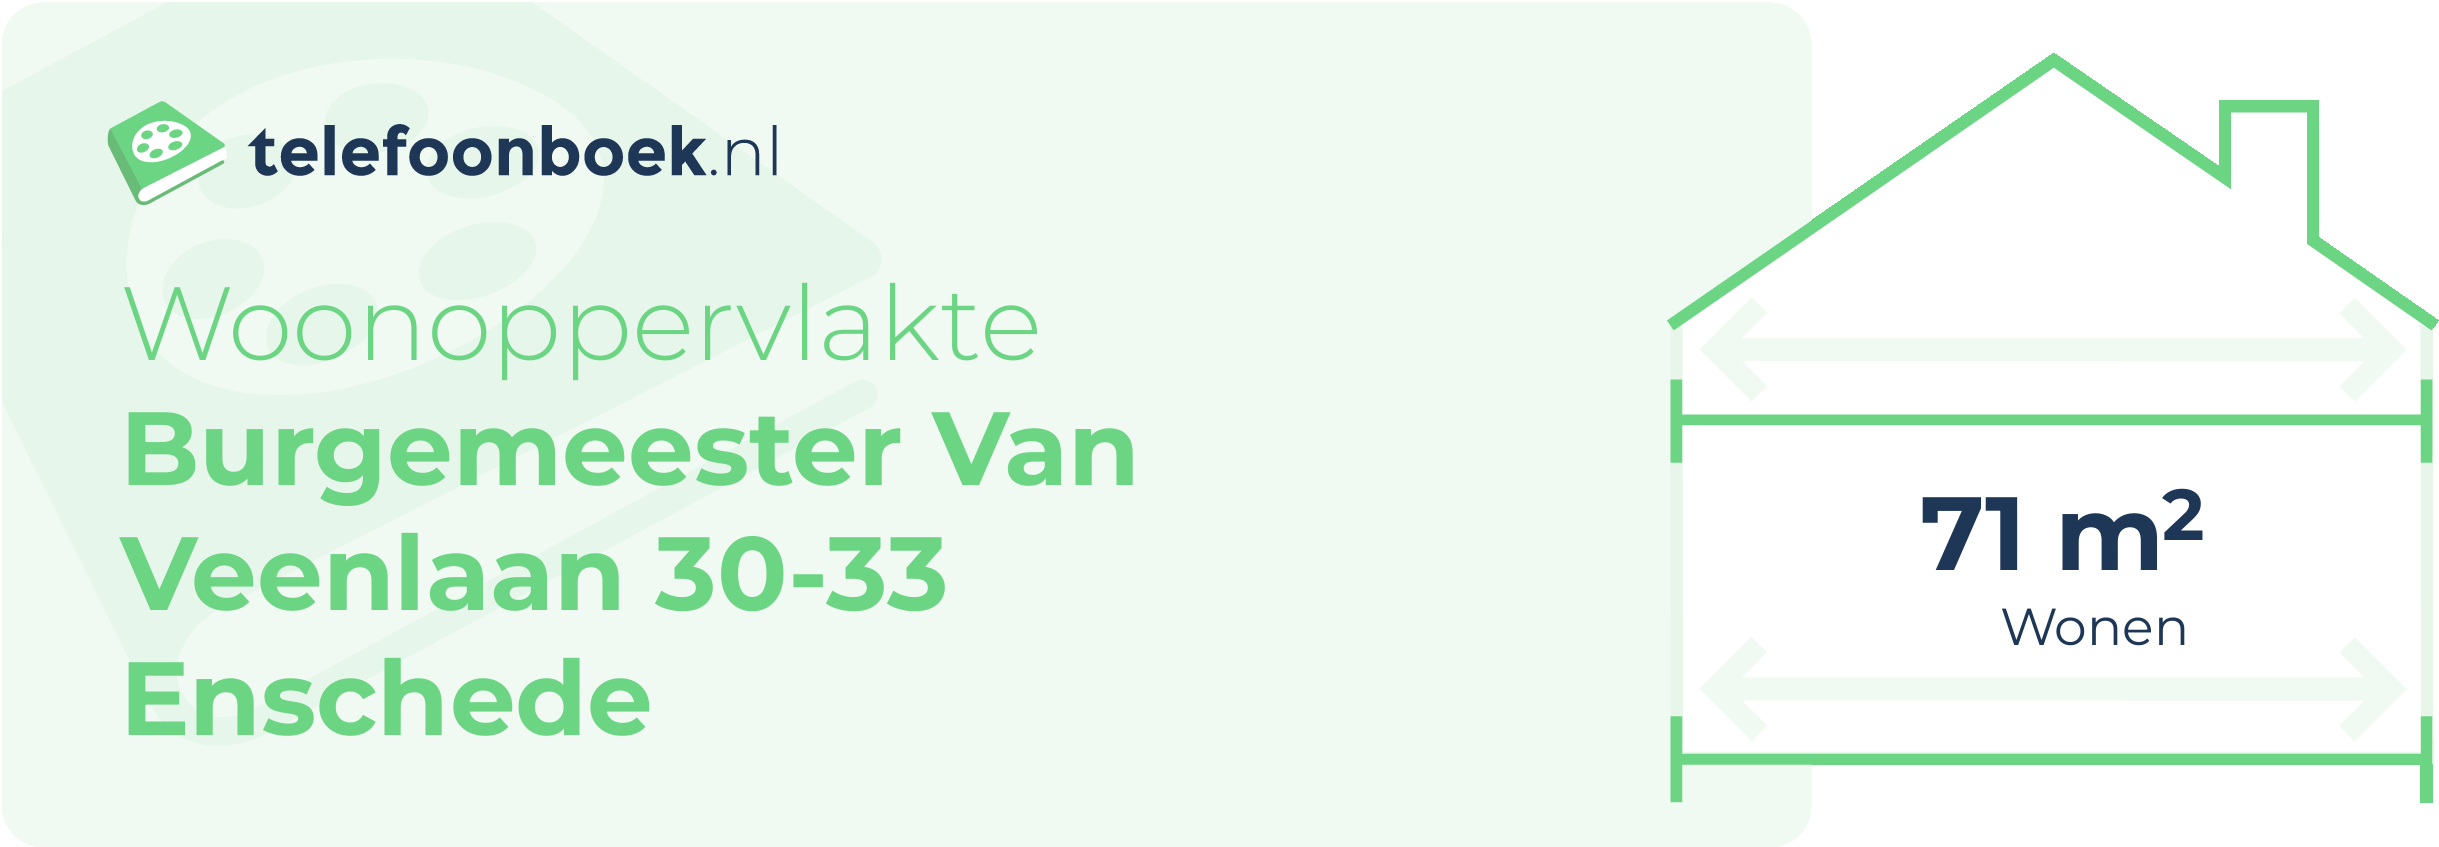 Woonoppervlakte Burgemeester Van Veenlaan 30-33 Enschede